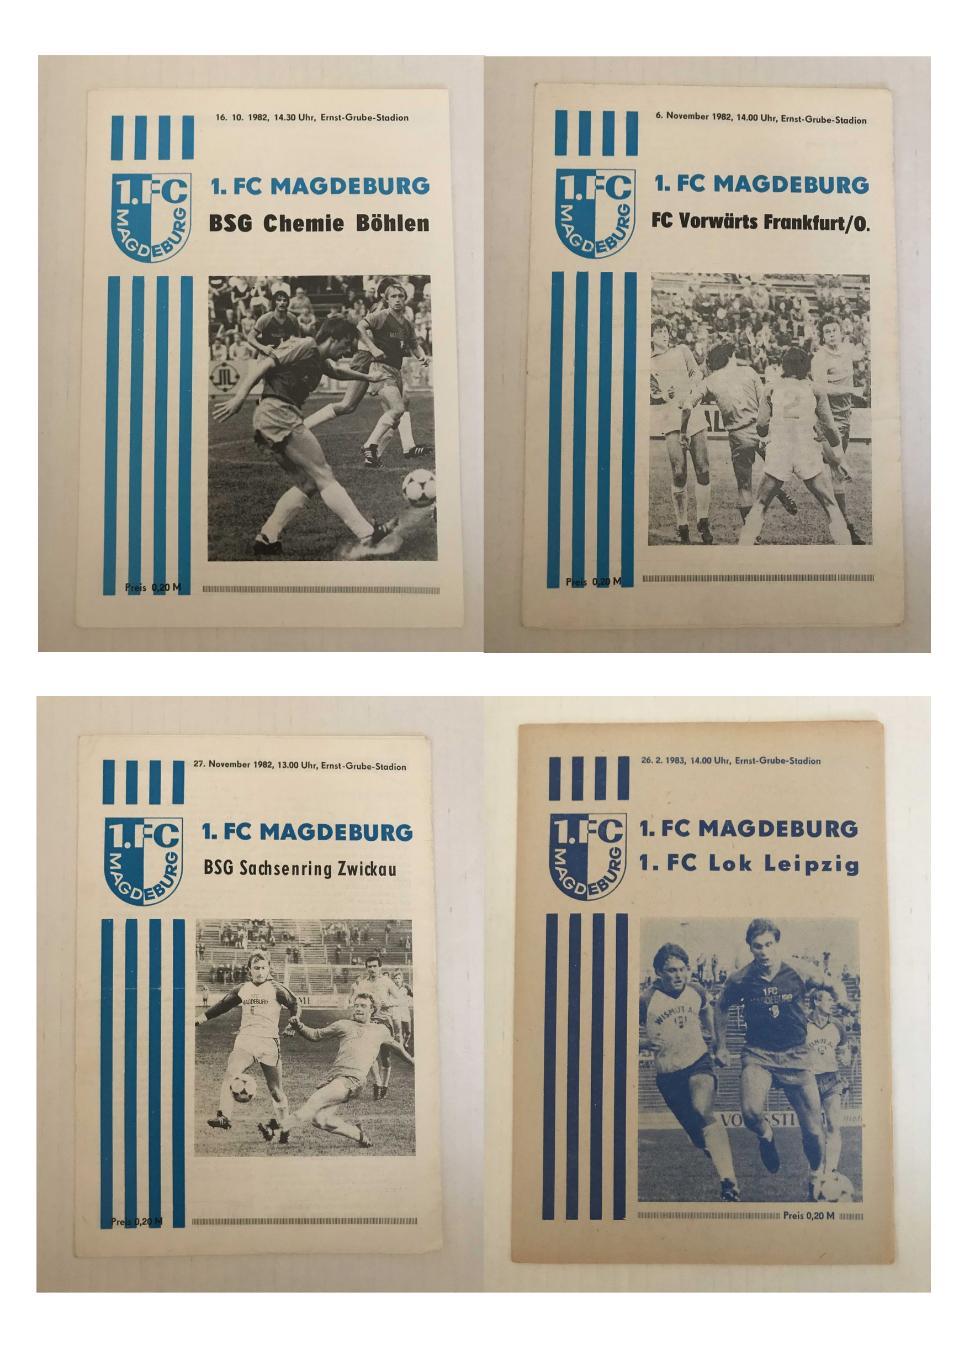 1.ФК Магдебург Оберлига ГДР 1982/83 домашний комплект 1